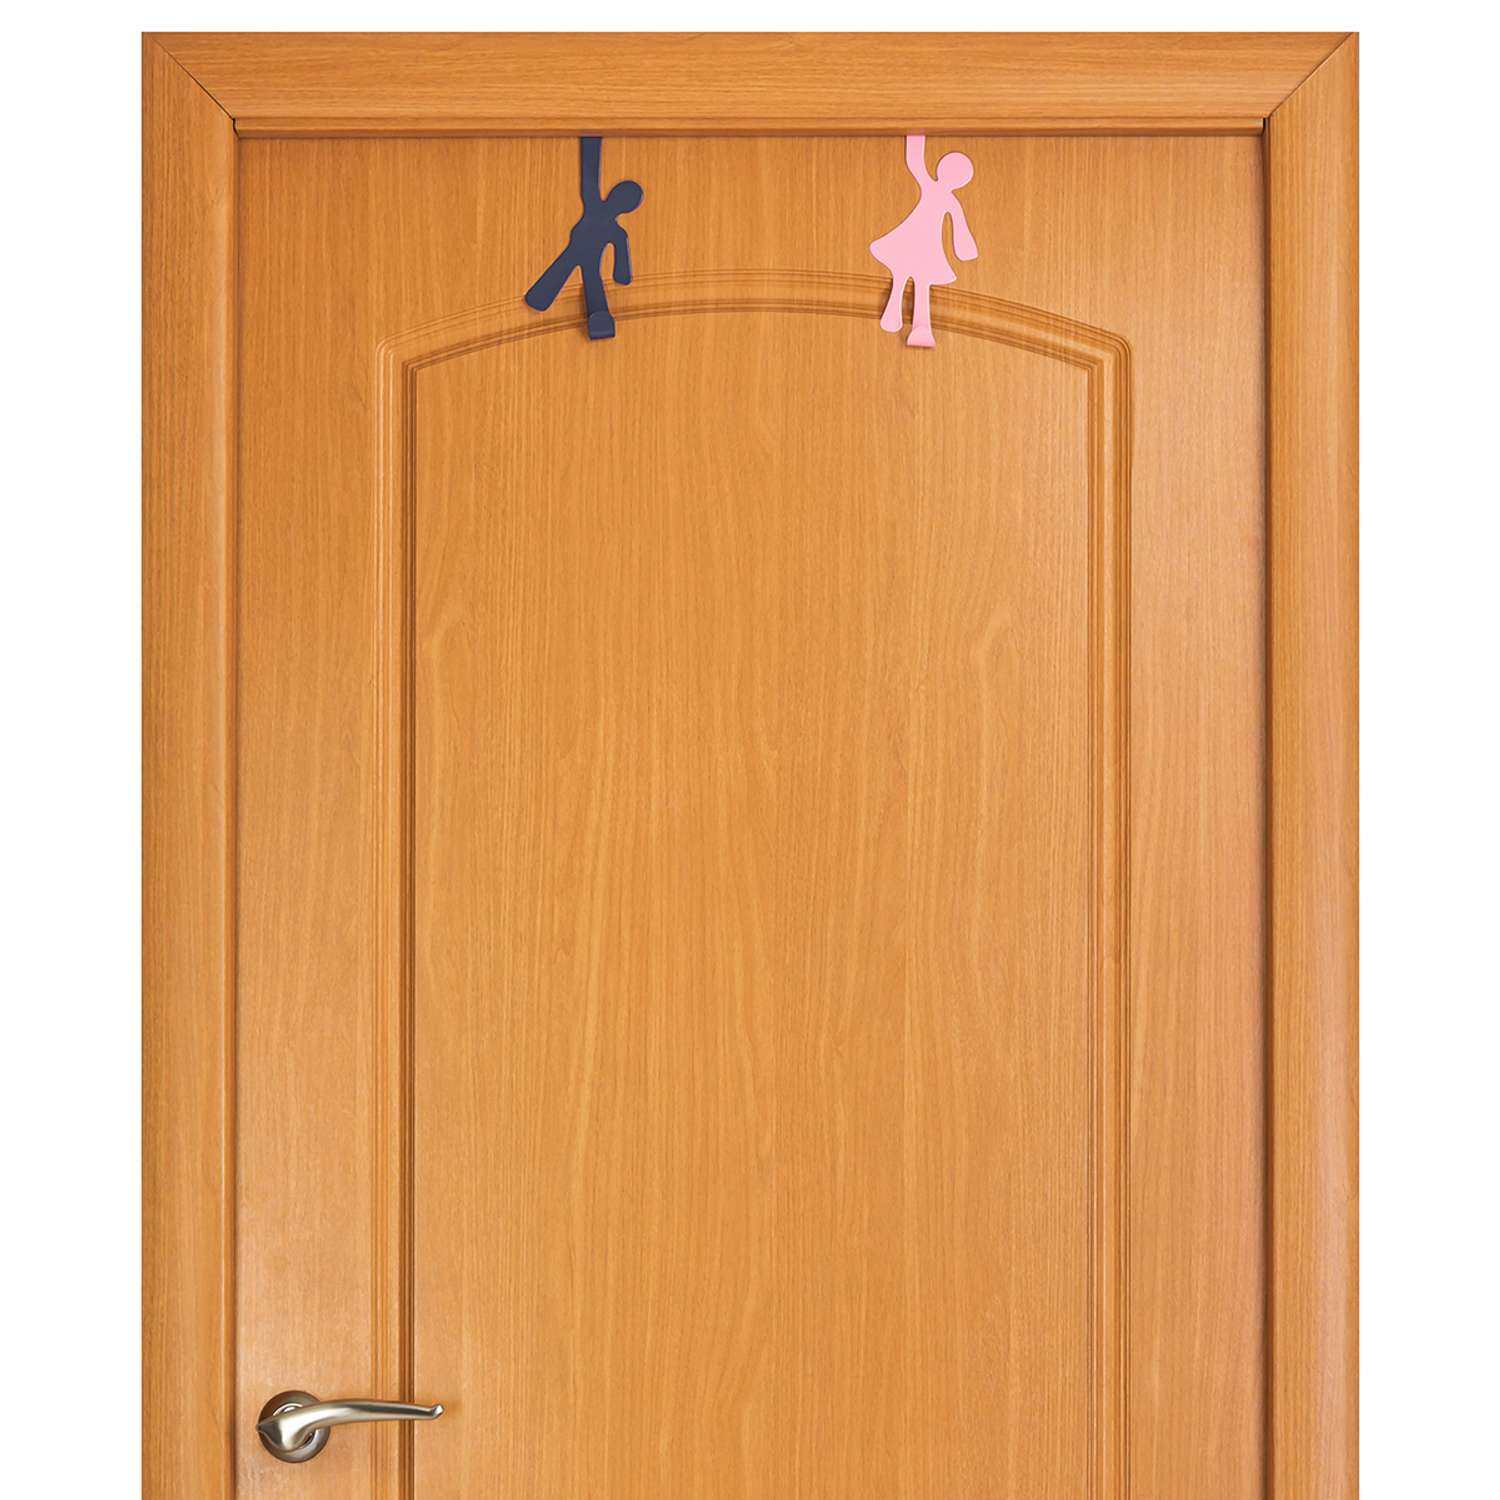 Вешалка El Casa на дверь навесная 2 шт 8.5х6.5х16.5. 8.5х6.5х17 см мальчик-девочка синяя и розовая - фото 4